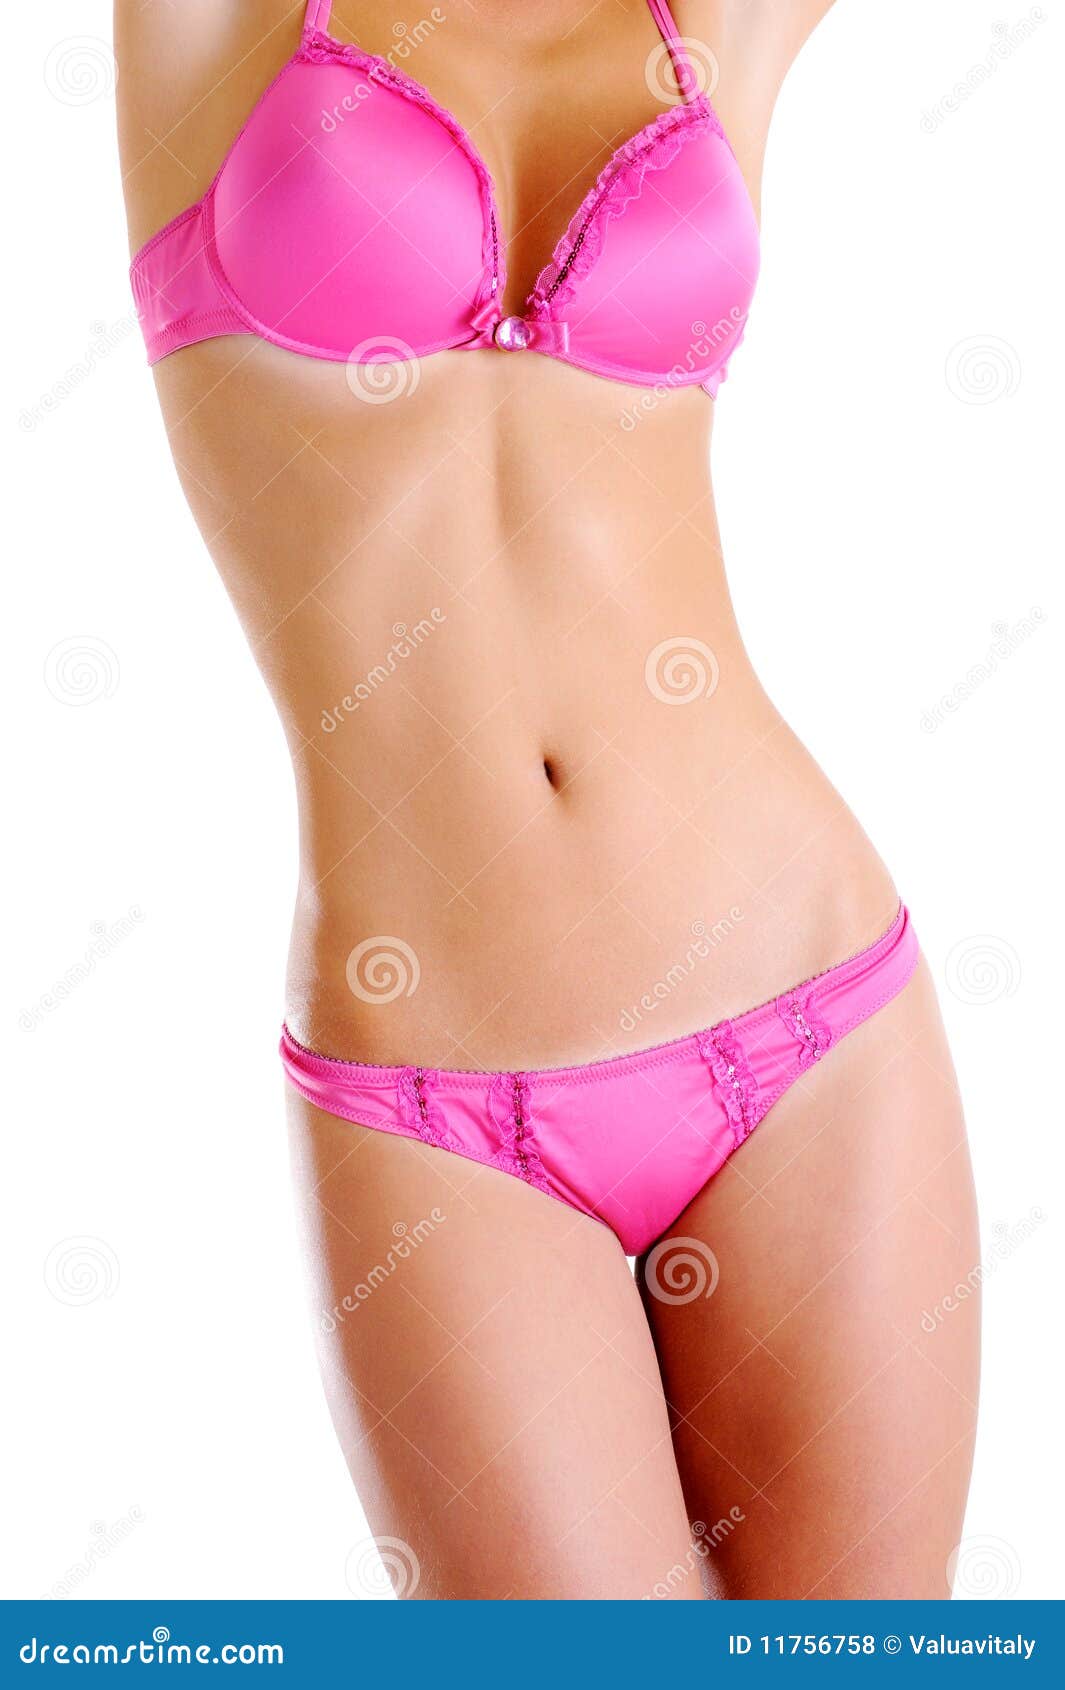 Corpo fêmea nu bonito perfeito. Aperfeiçoe o corpo fêmea nu bonito em uma roupa interior cor-de-rosa. Vista dianteira. Em um fundo branco